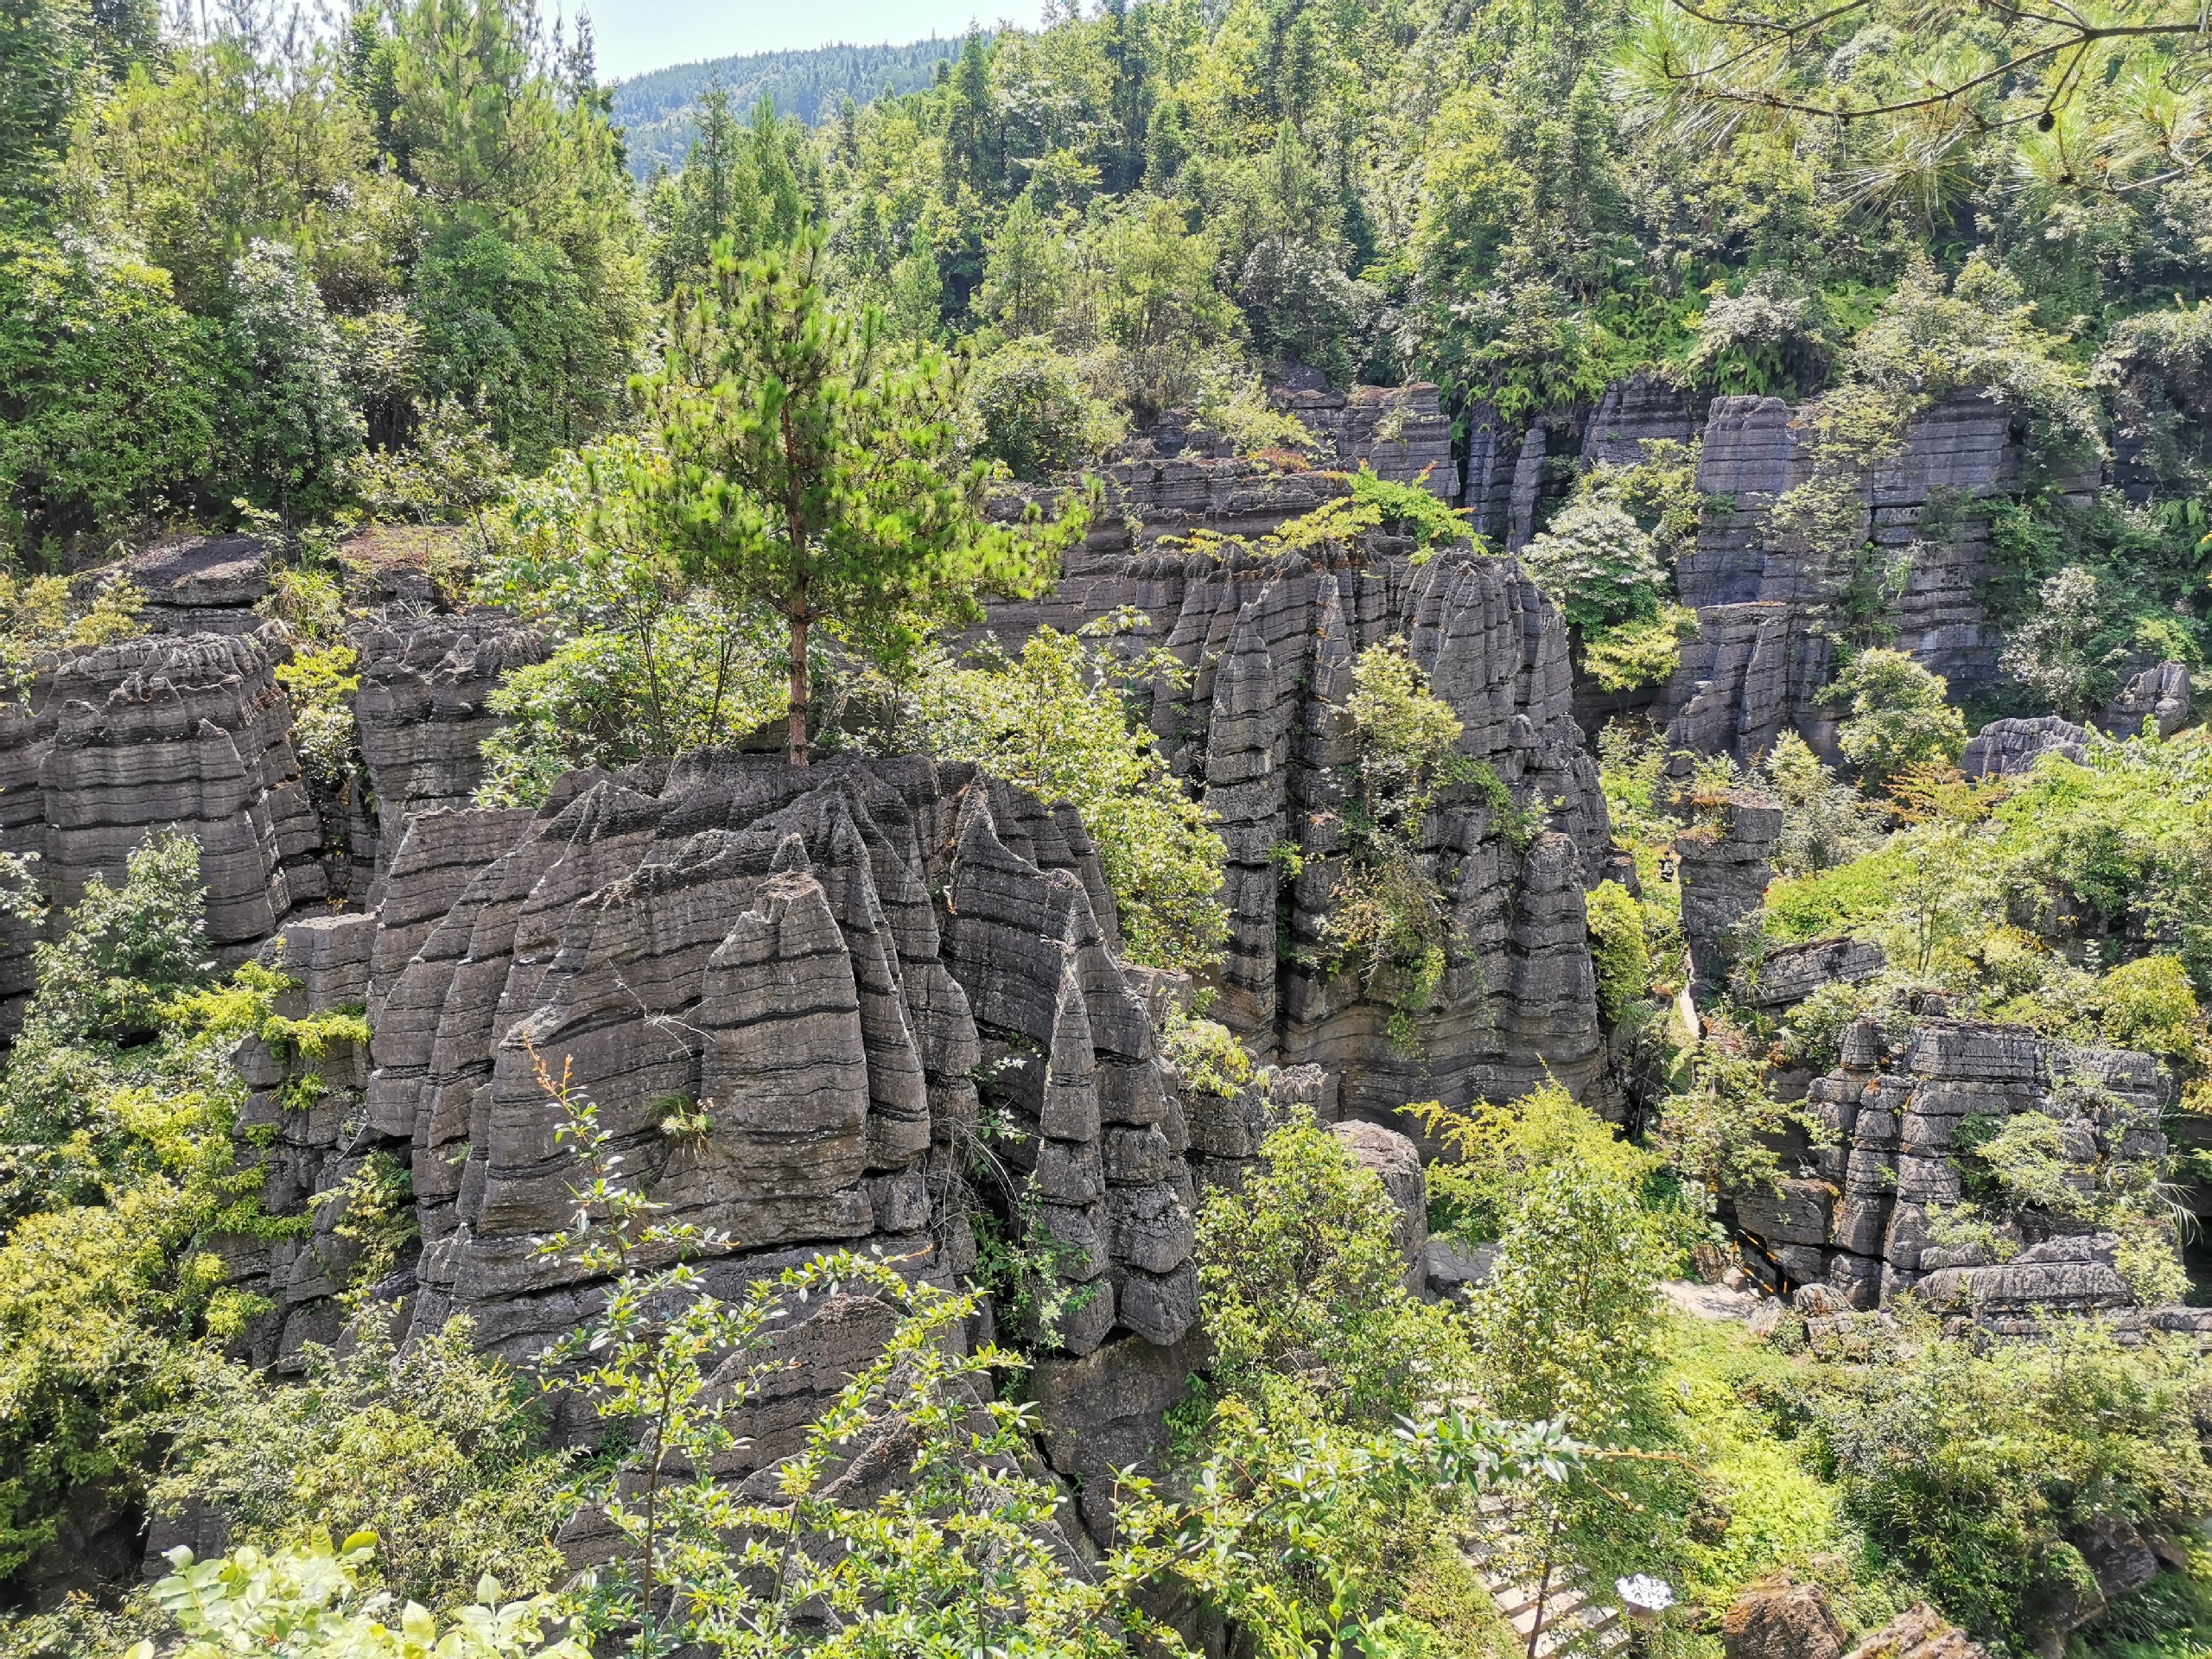 恩施梭布垭石林-梭布垭石林被称为世界第一奥陶纪石林